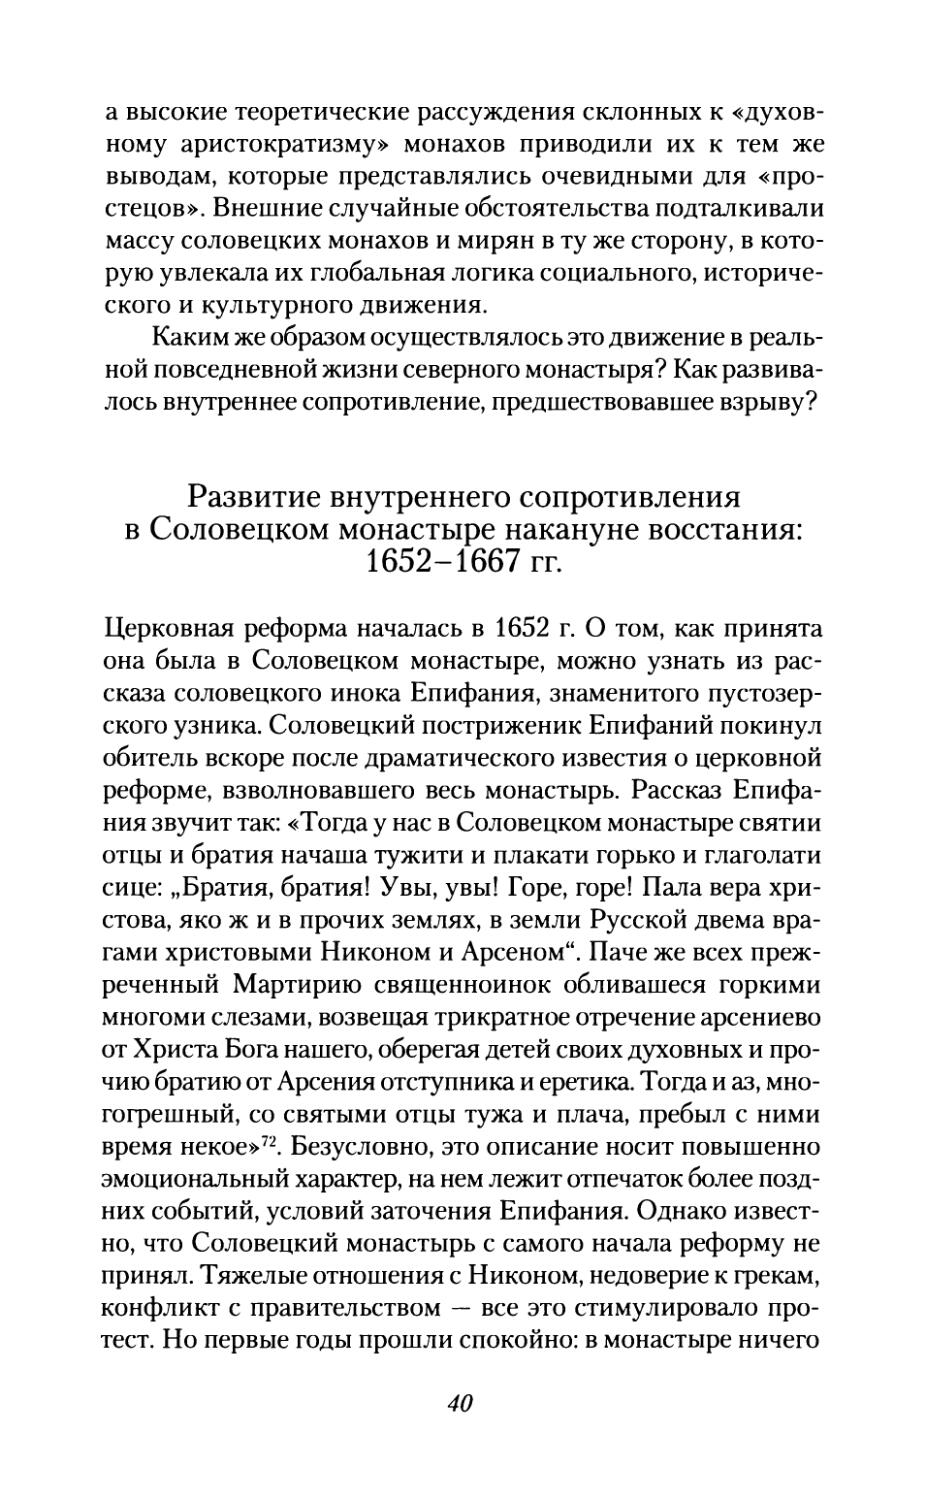 Развитие  внутреннего  сопротивления  в  Соловецком монастыре  накануне  восстания:  1652-1667  гг